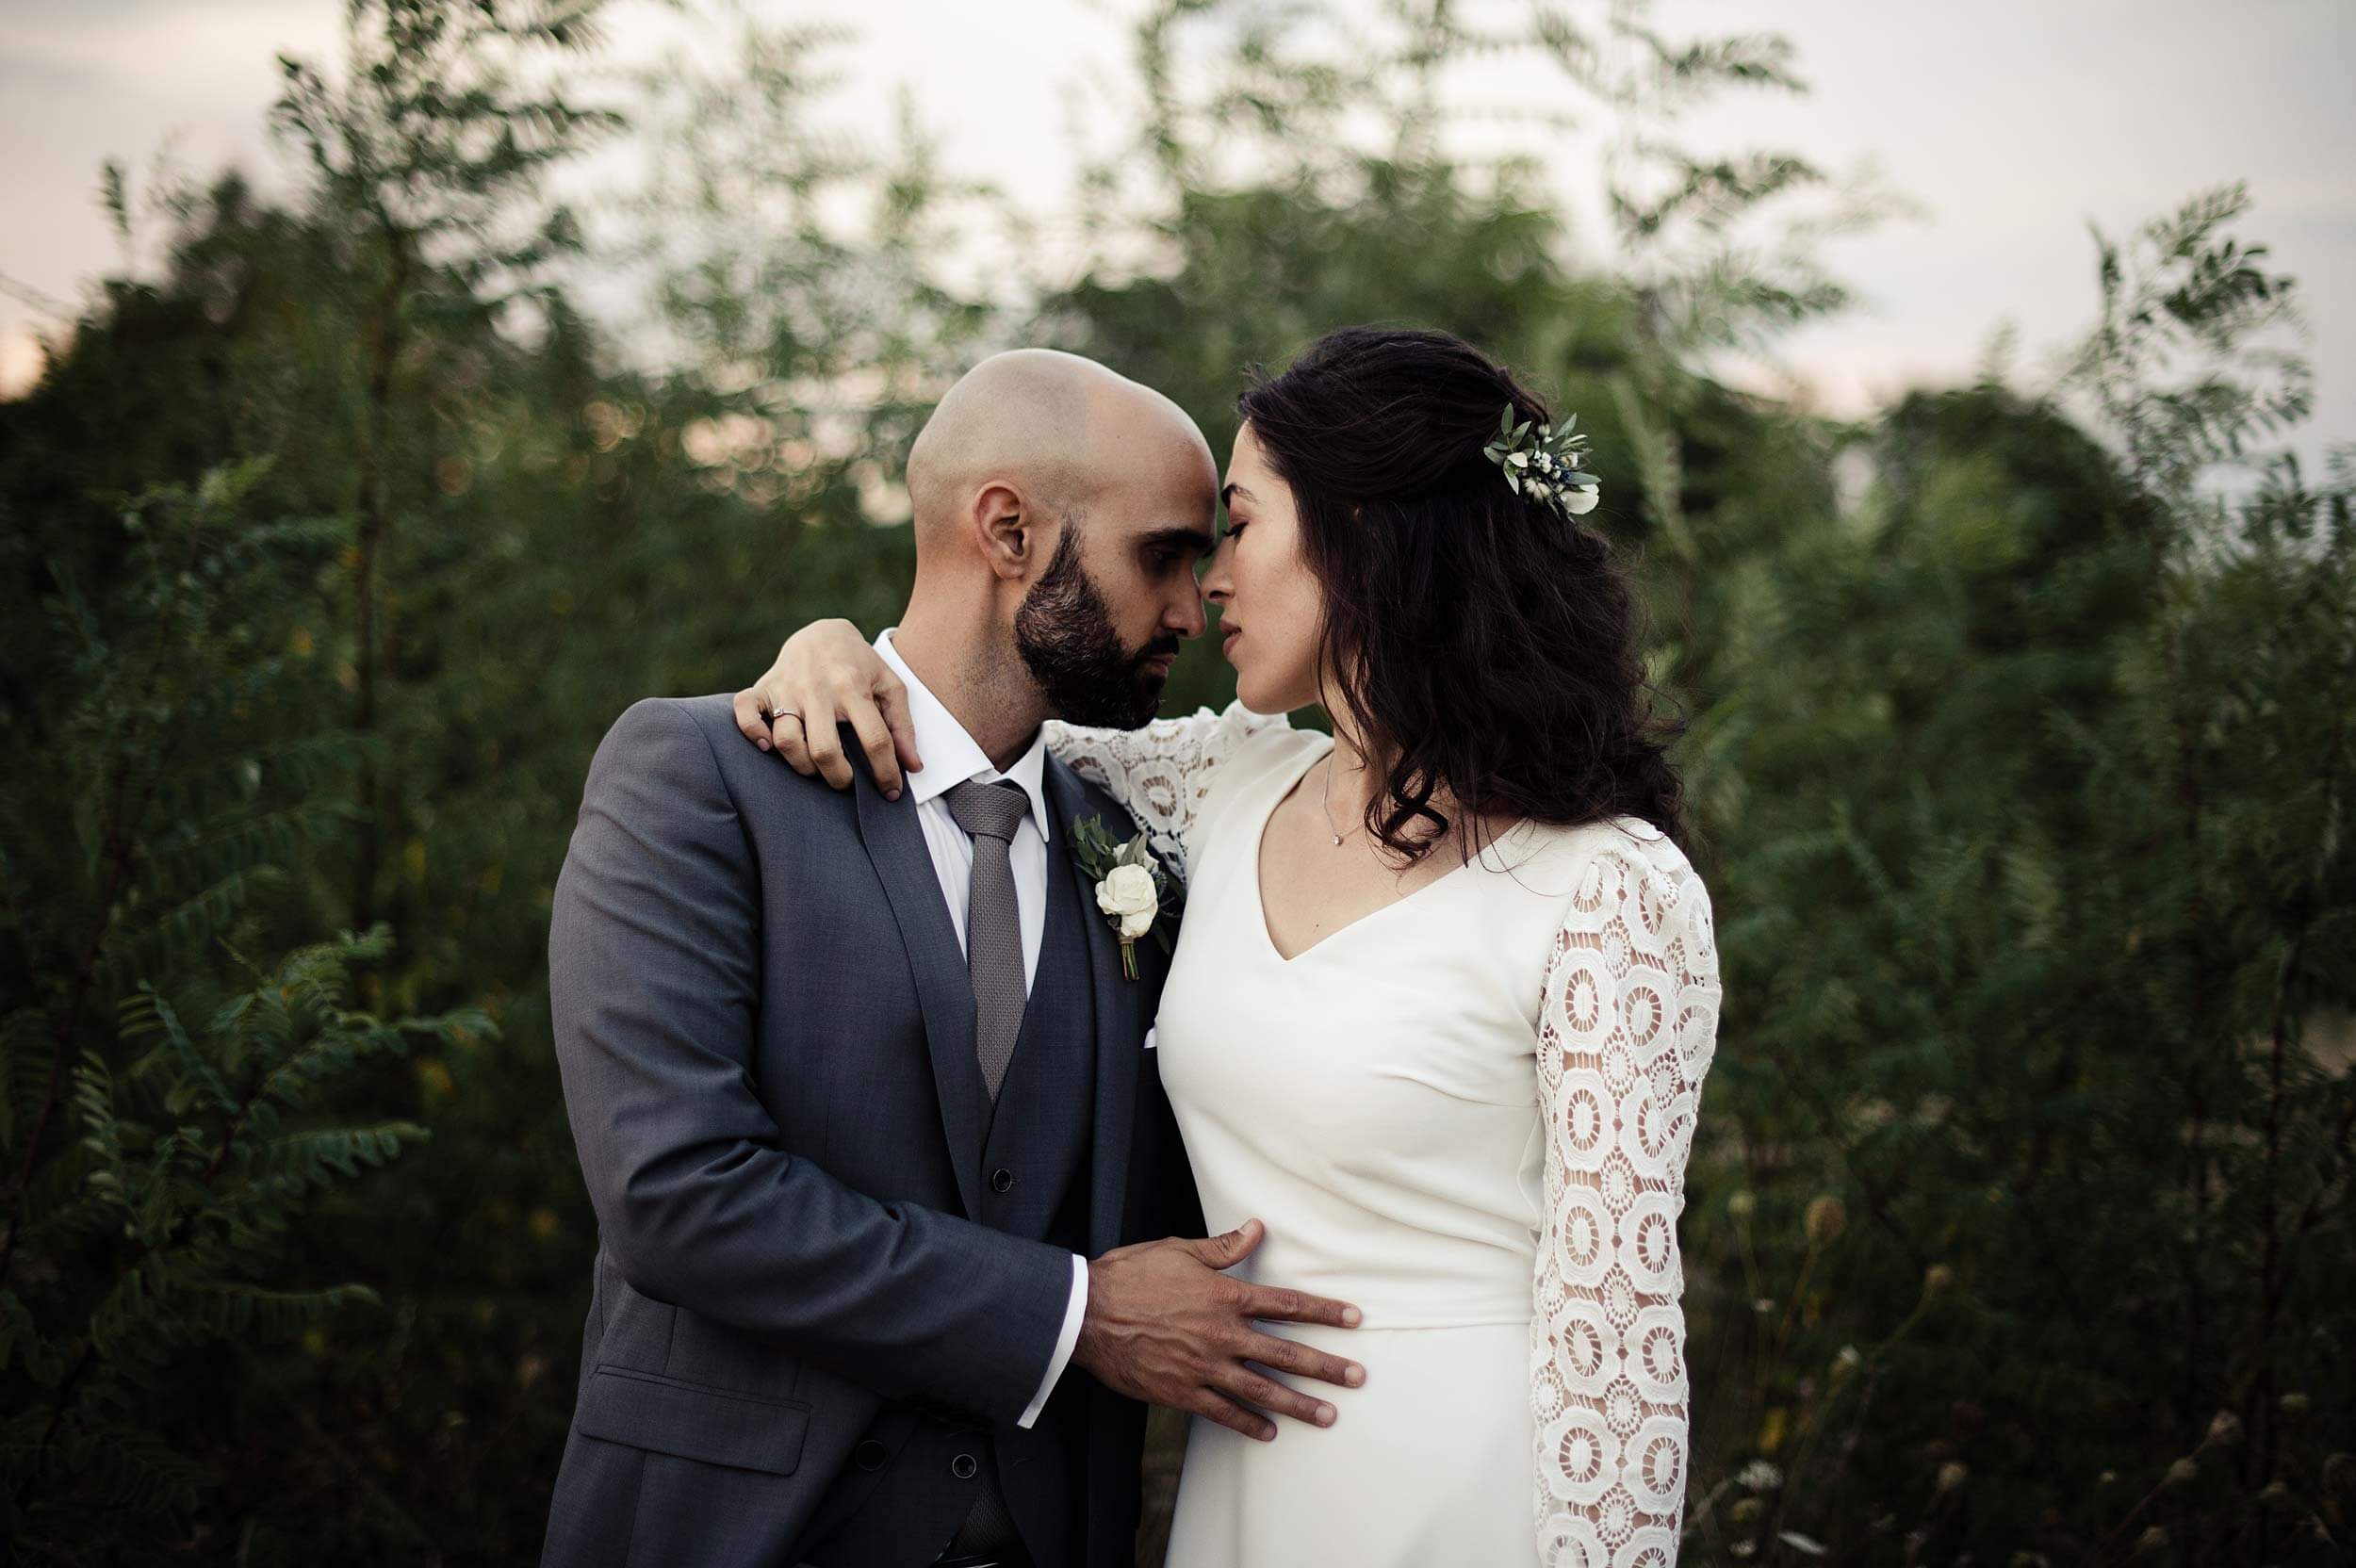 Photographe à lyon mariage